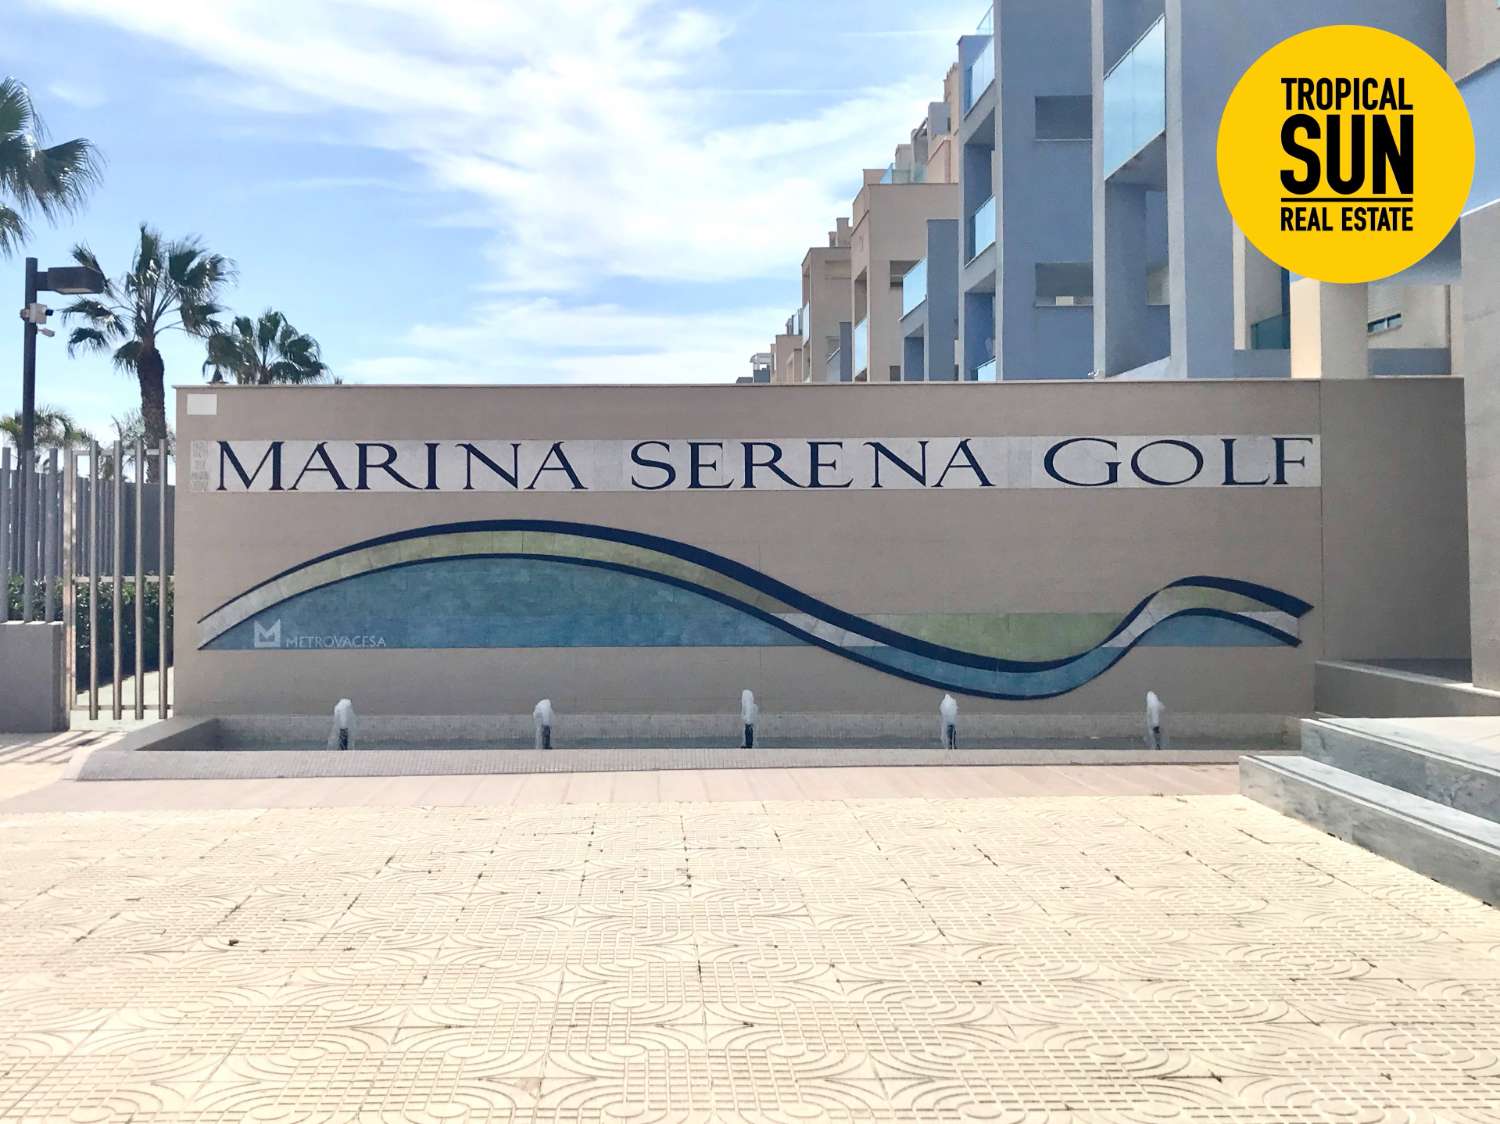 Urbanizatsiya Marina Serena Golf: ideal'noye mesto dlya zhizni. Otkroyte dlya sebya etot fantasticheskiy dvukhurovnevyy pentkhaus.